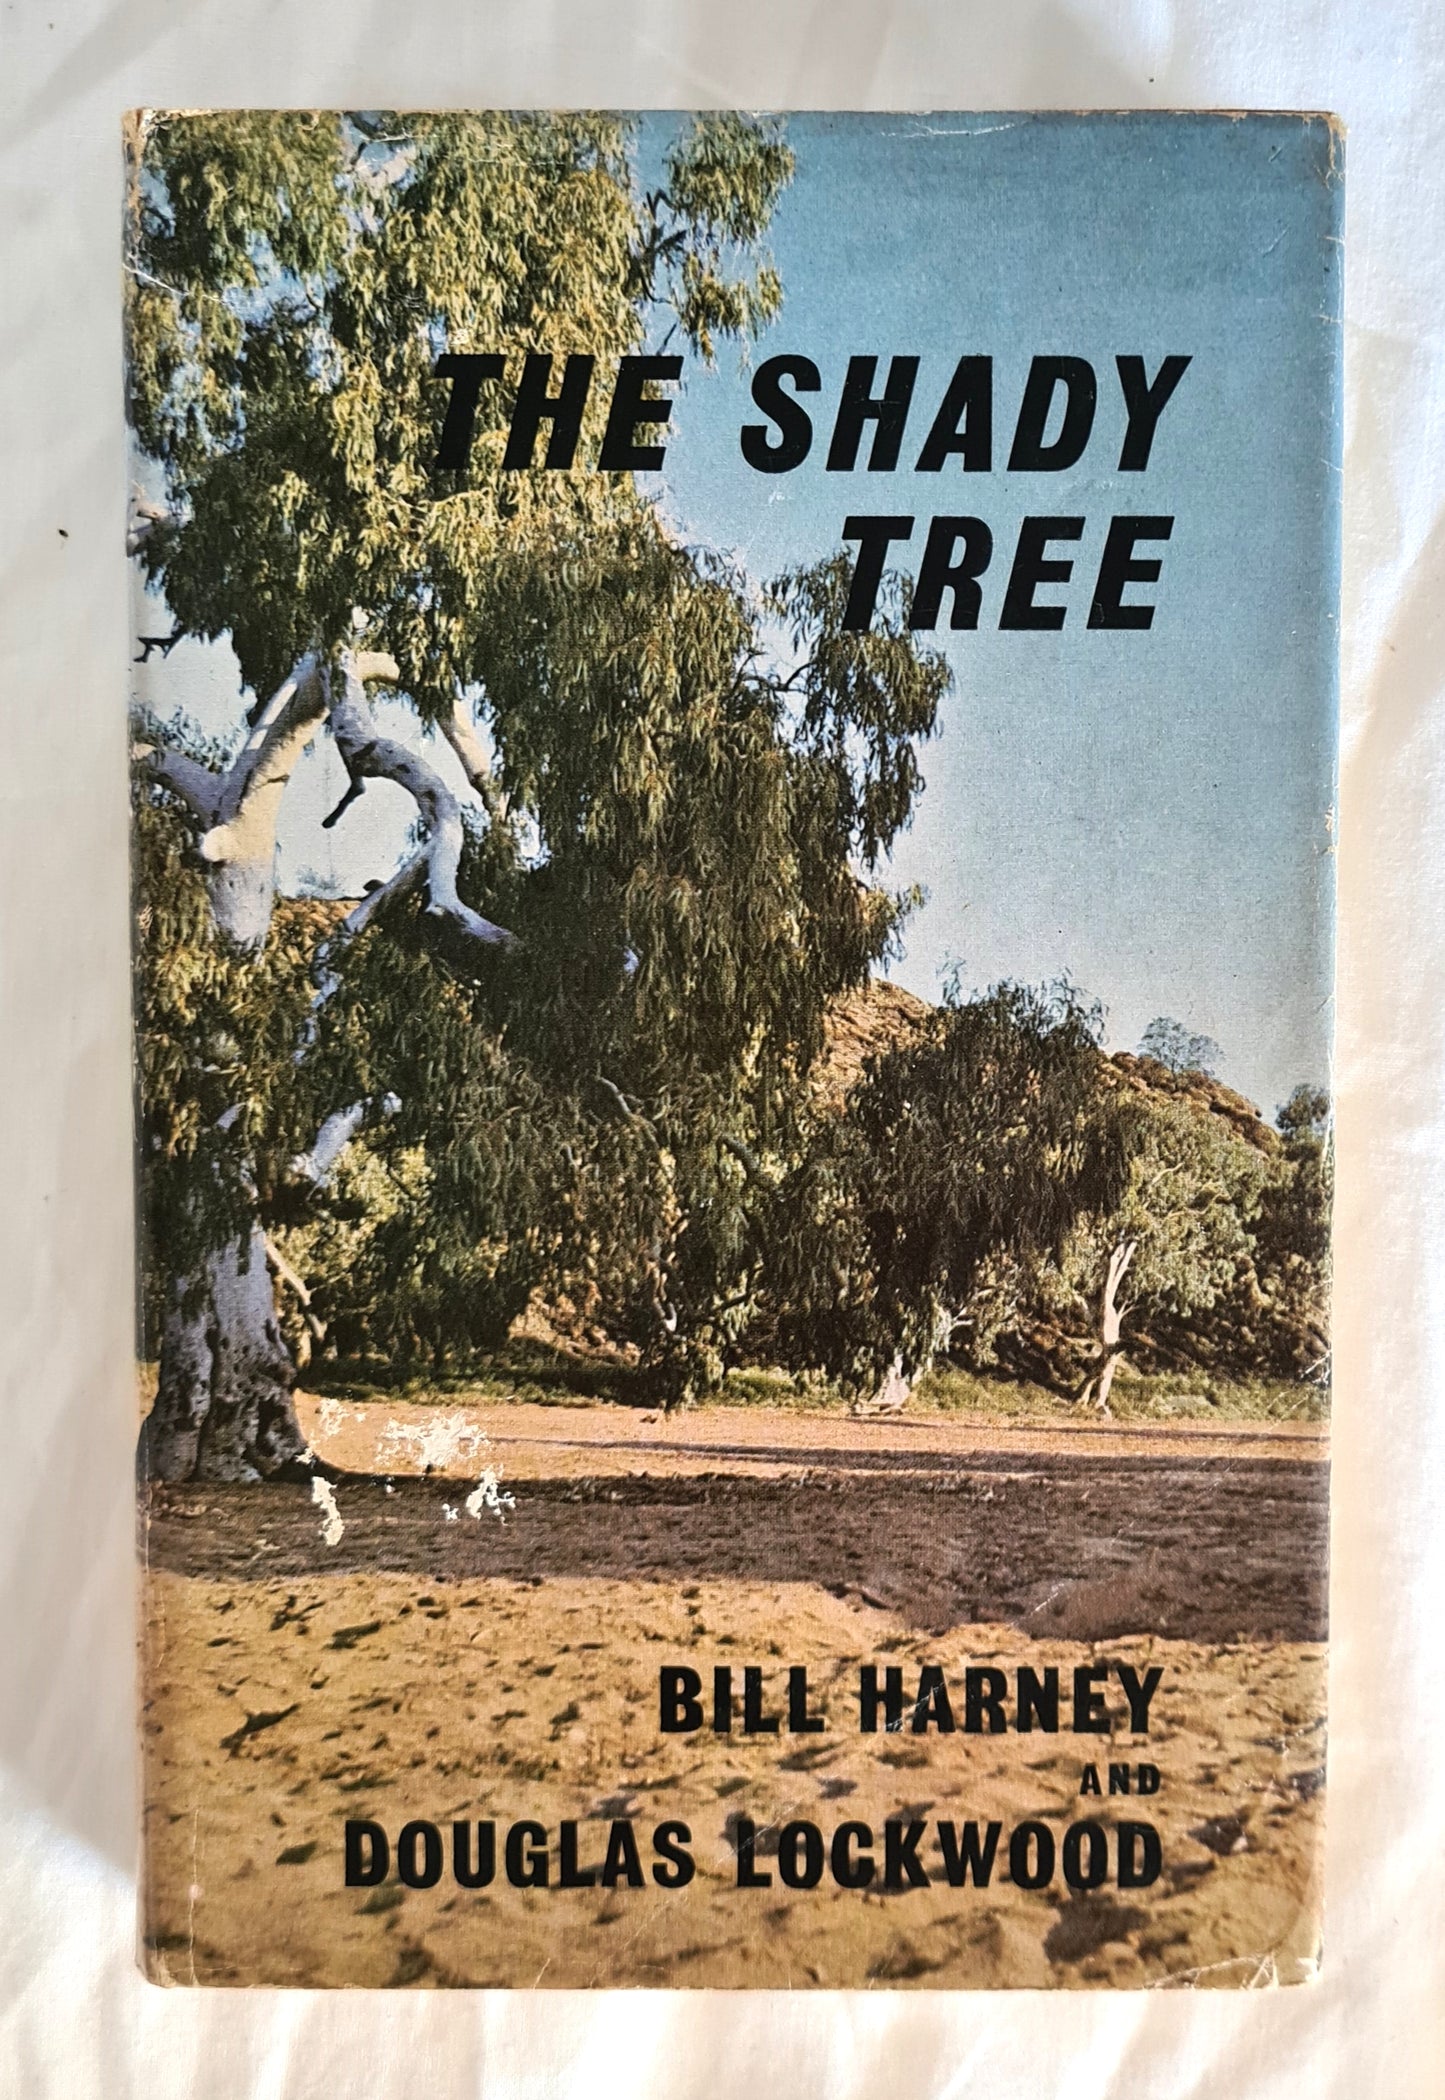 The Shady Tree by W. E. (Bill) Harney and Douglas Lockwood